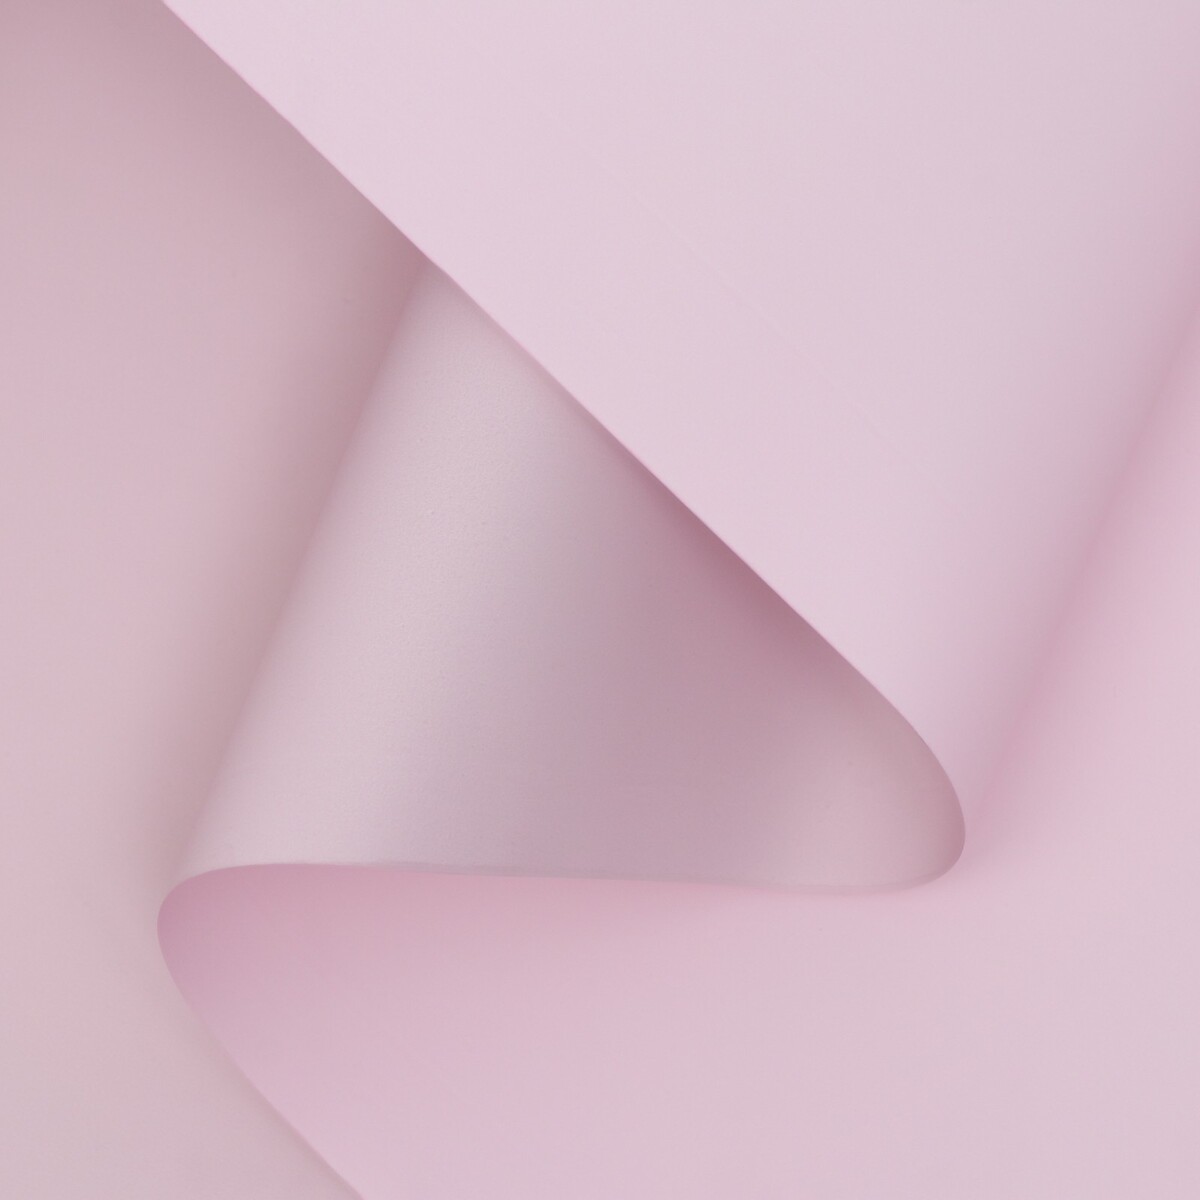 Пленка матовая двухсторонняя , пастельная серия, 65 мкм пастельный, розовый, 0,5 x 10 м фигурка among us action розовый 2 серия 11 5 см au6210 c